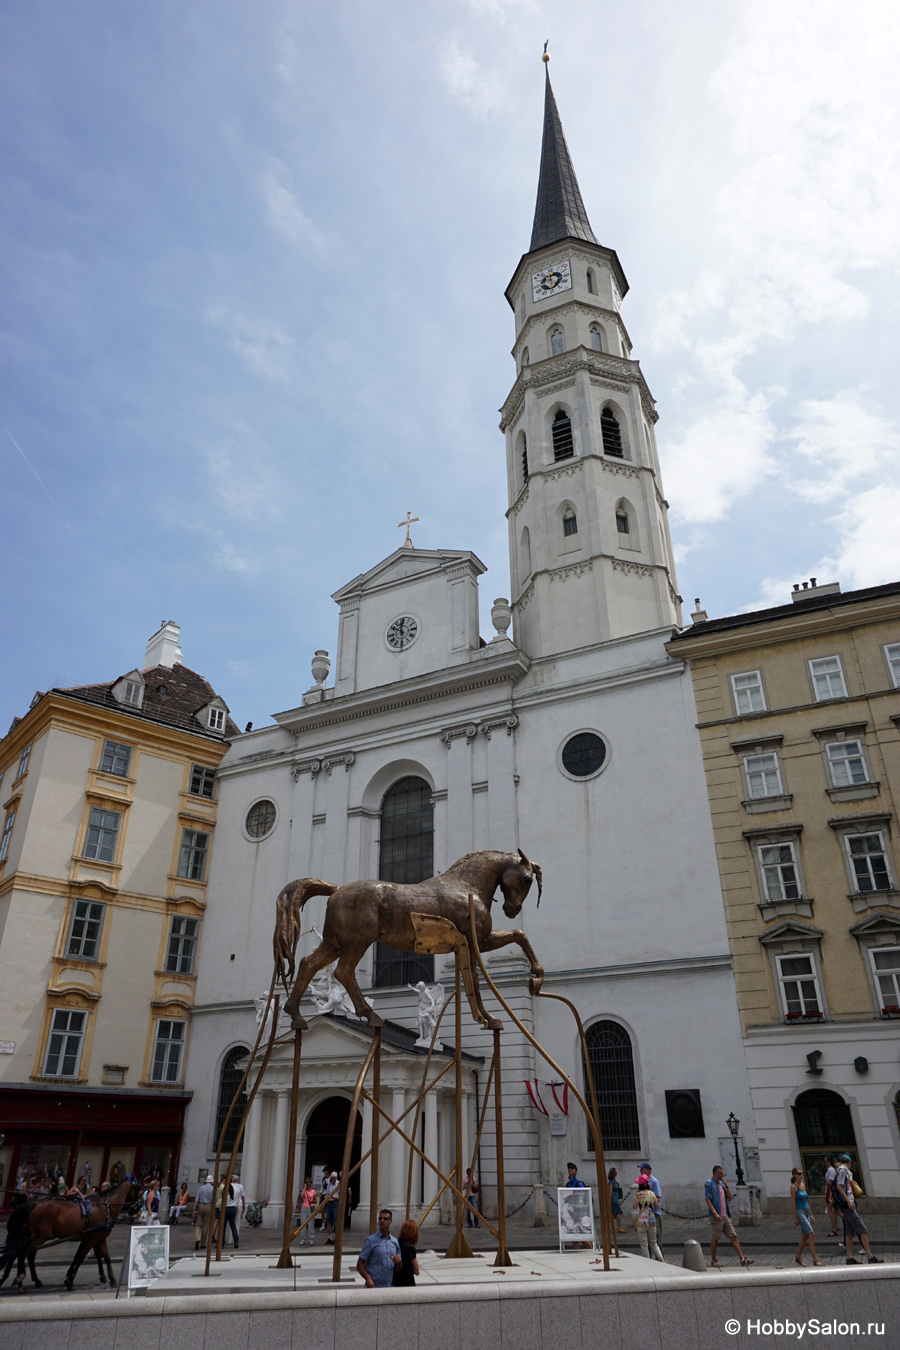 Церковь Святого Михаила в Вене